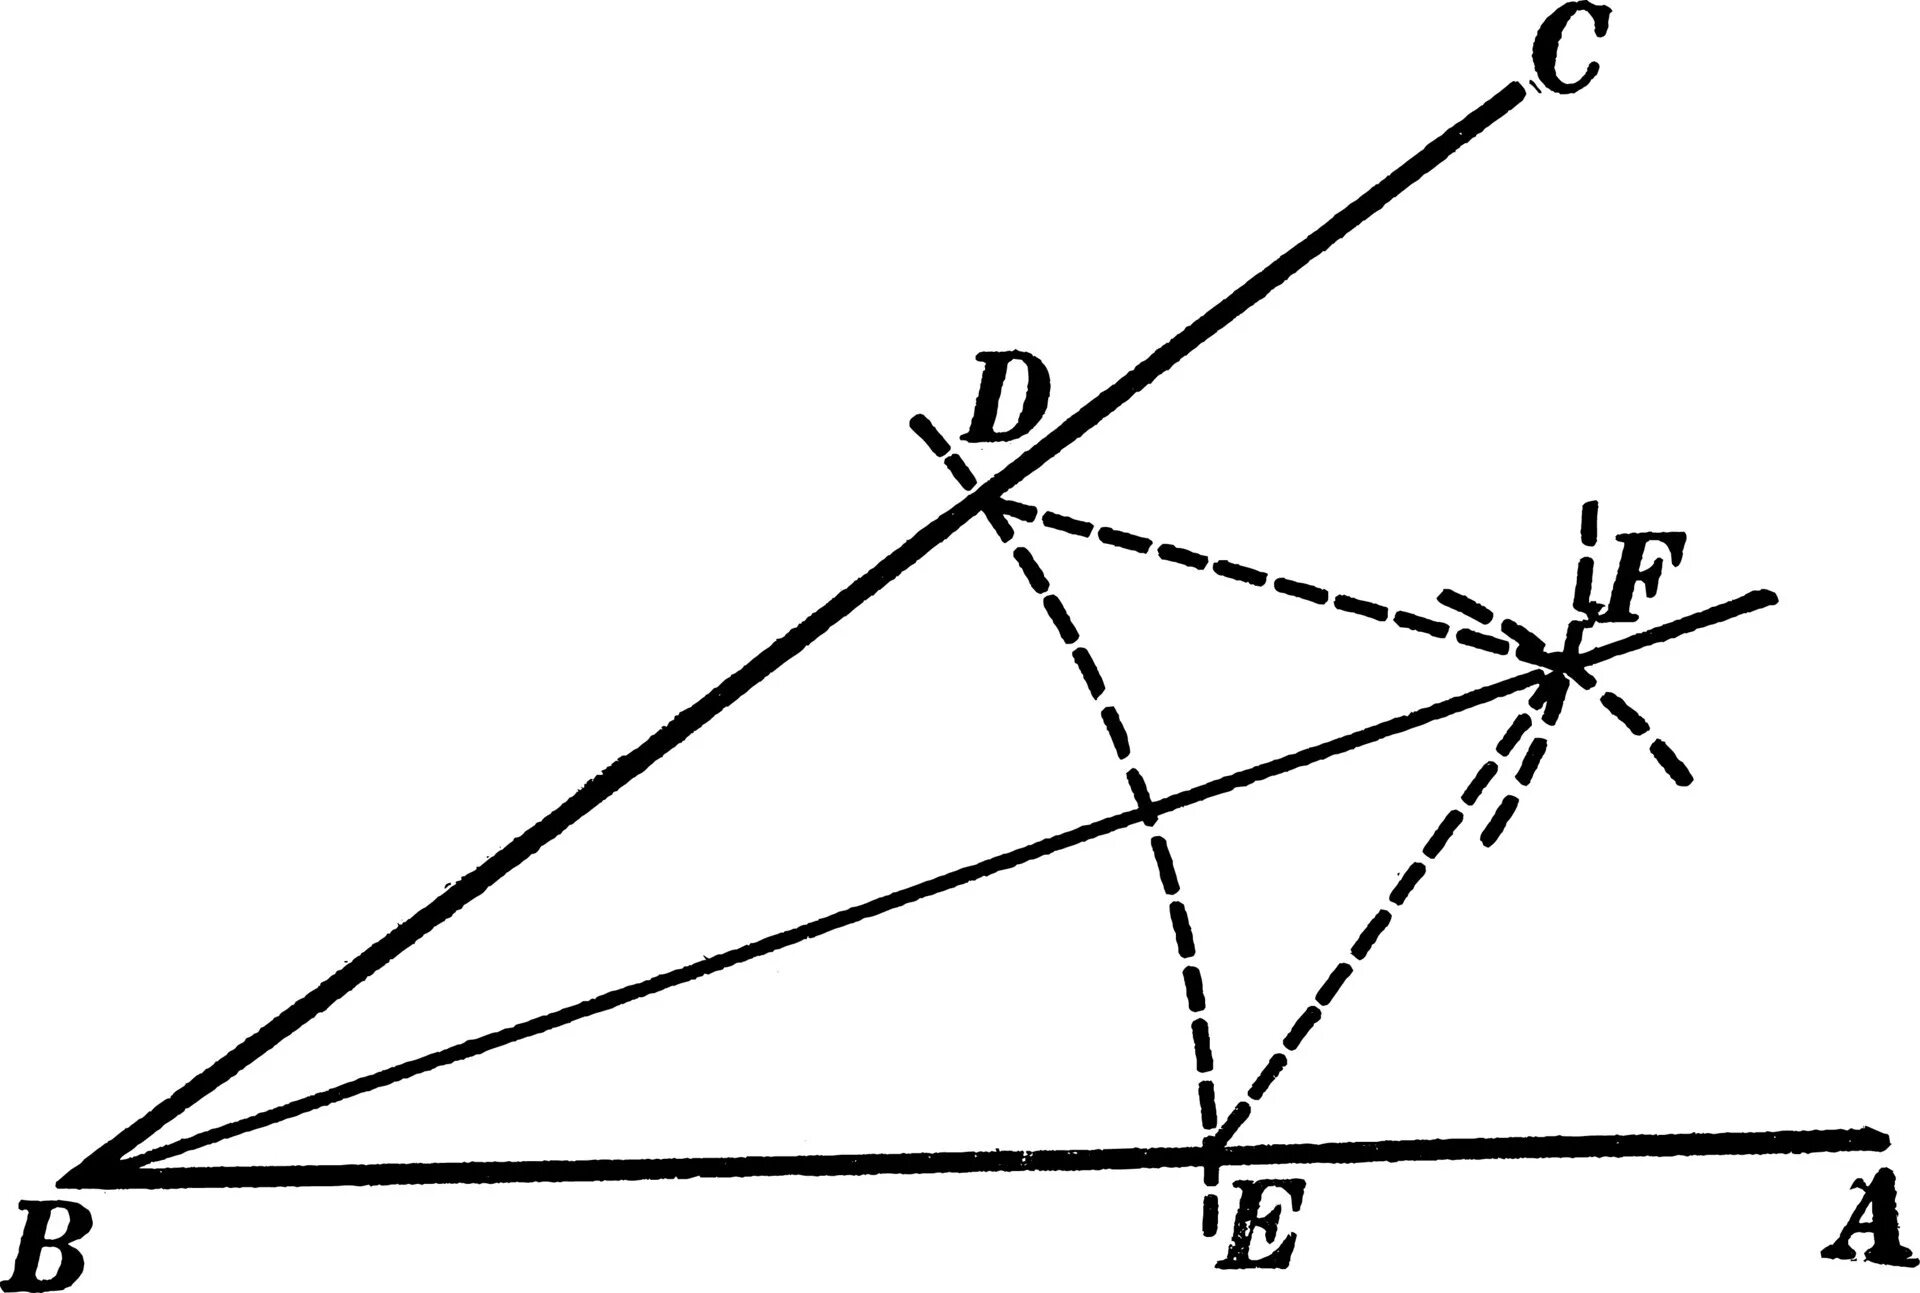 Построить 1 биссектрису угла. Построение биссектрисы треугольника с помощью циркуля. Построить биссектрису треугольника с помощью циркуля. Построение биссектрисы угла с помощью циркуля и линейки. Построение биссектрис треугольника с помощью циркуля и линейки.